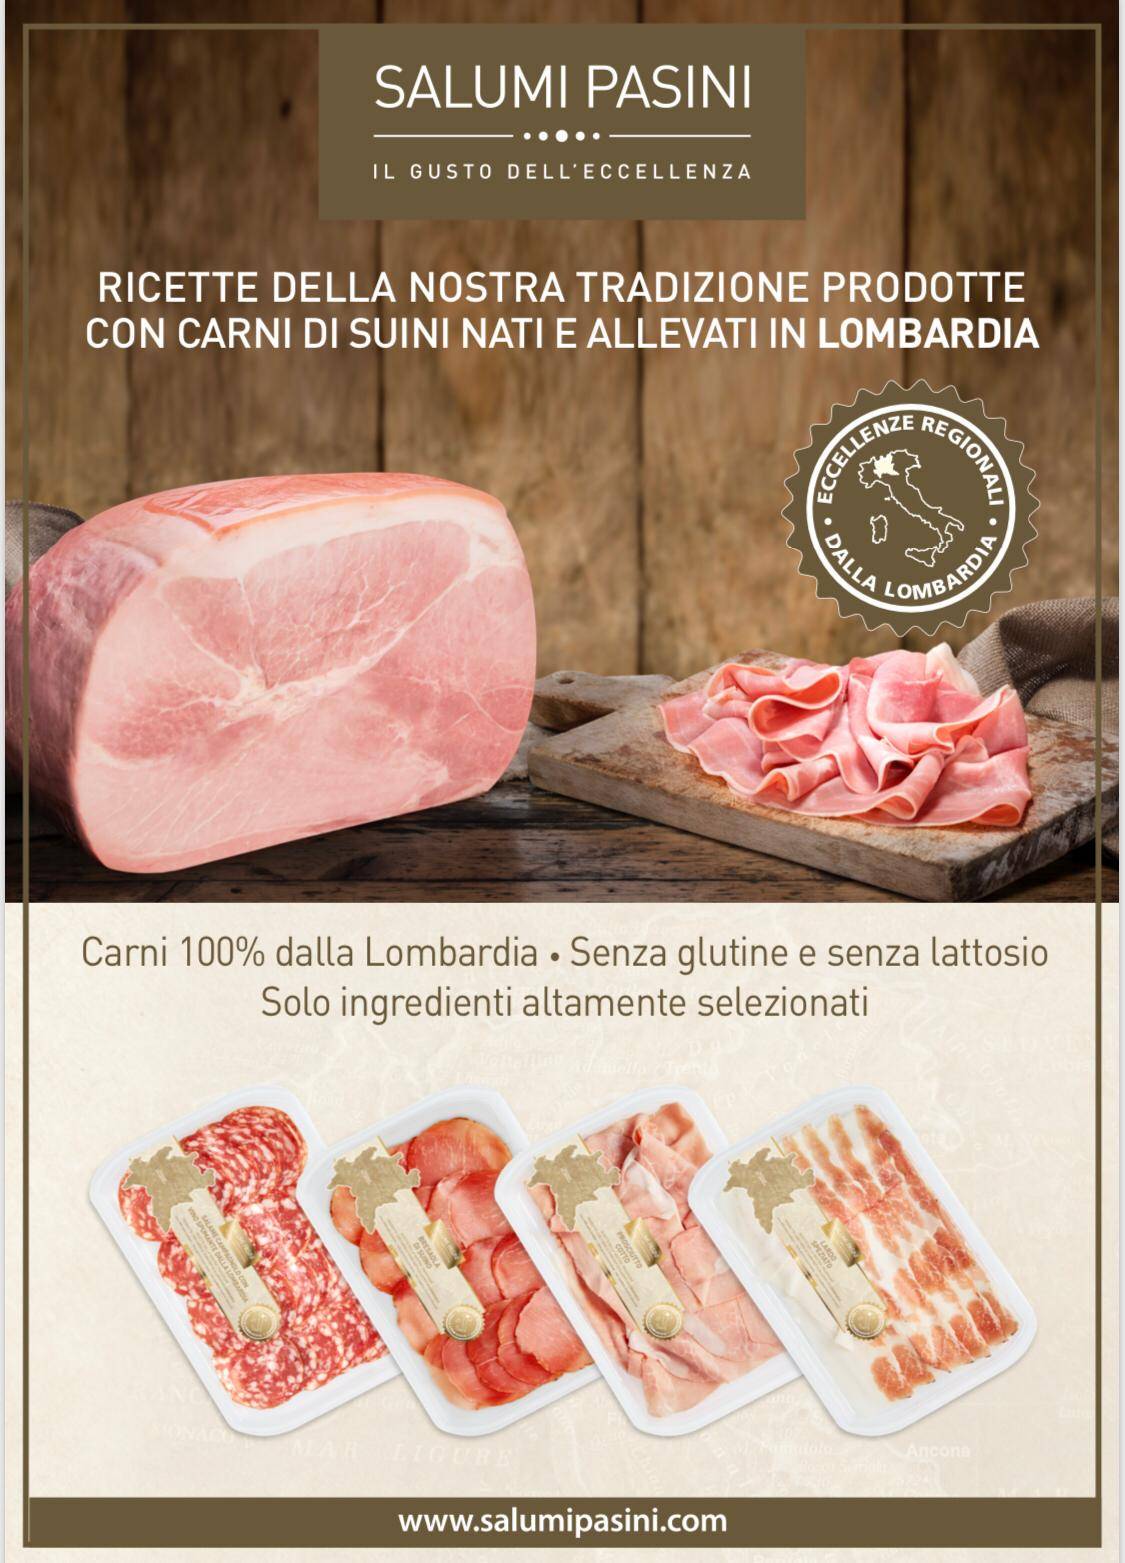 Salumi Pasini lancia la prima linea di prodotti made in Lombardia